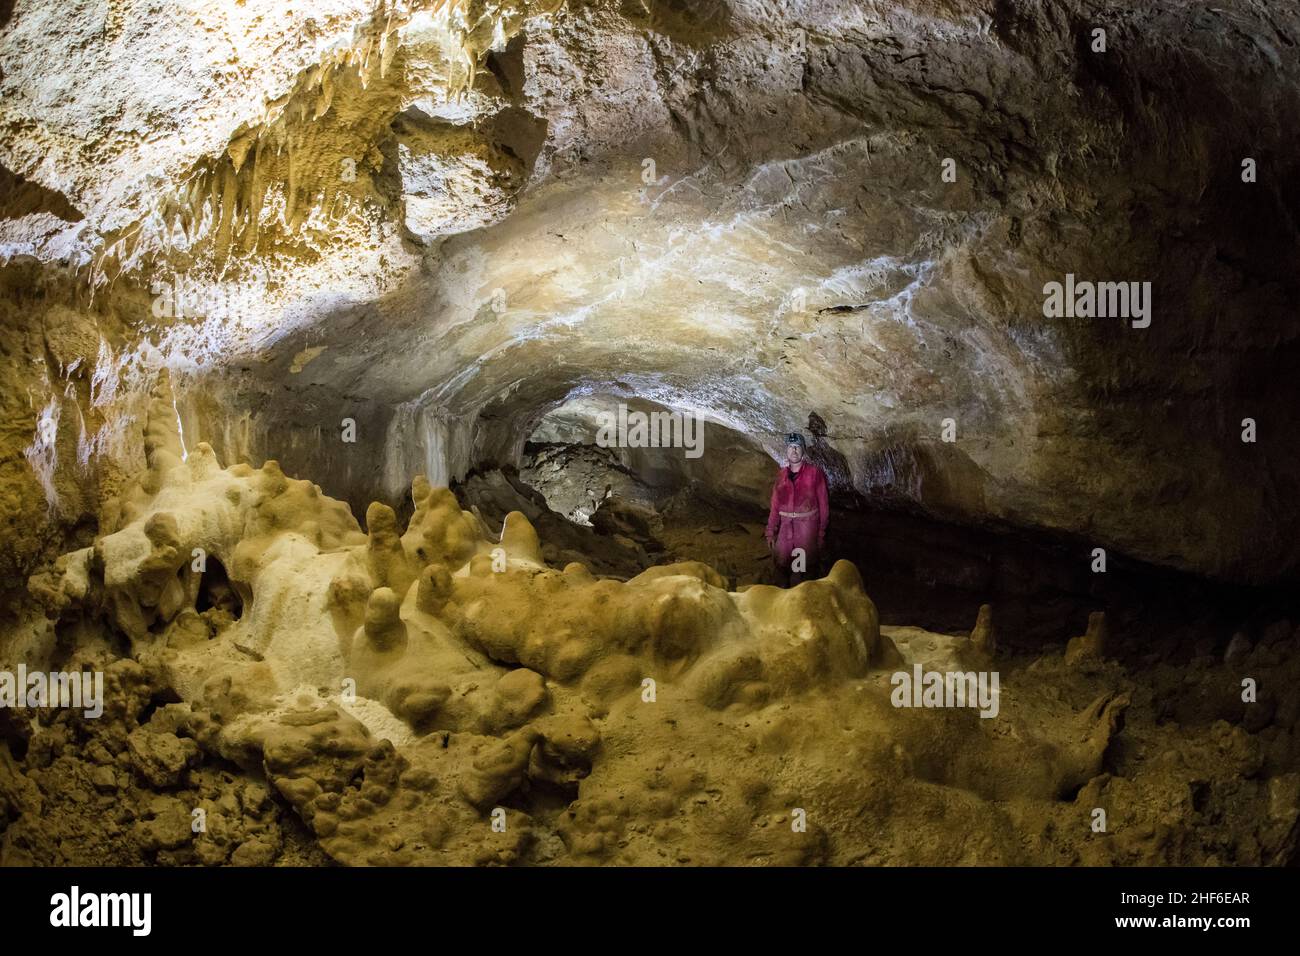 Grotte de stalactite en France, Grotte de la Combe aux Moines Banque D'Images